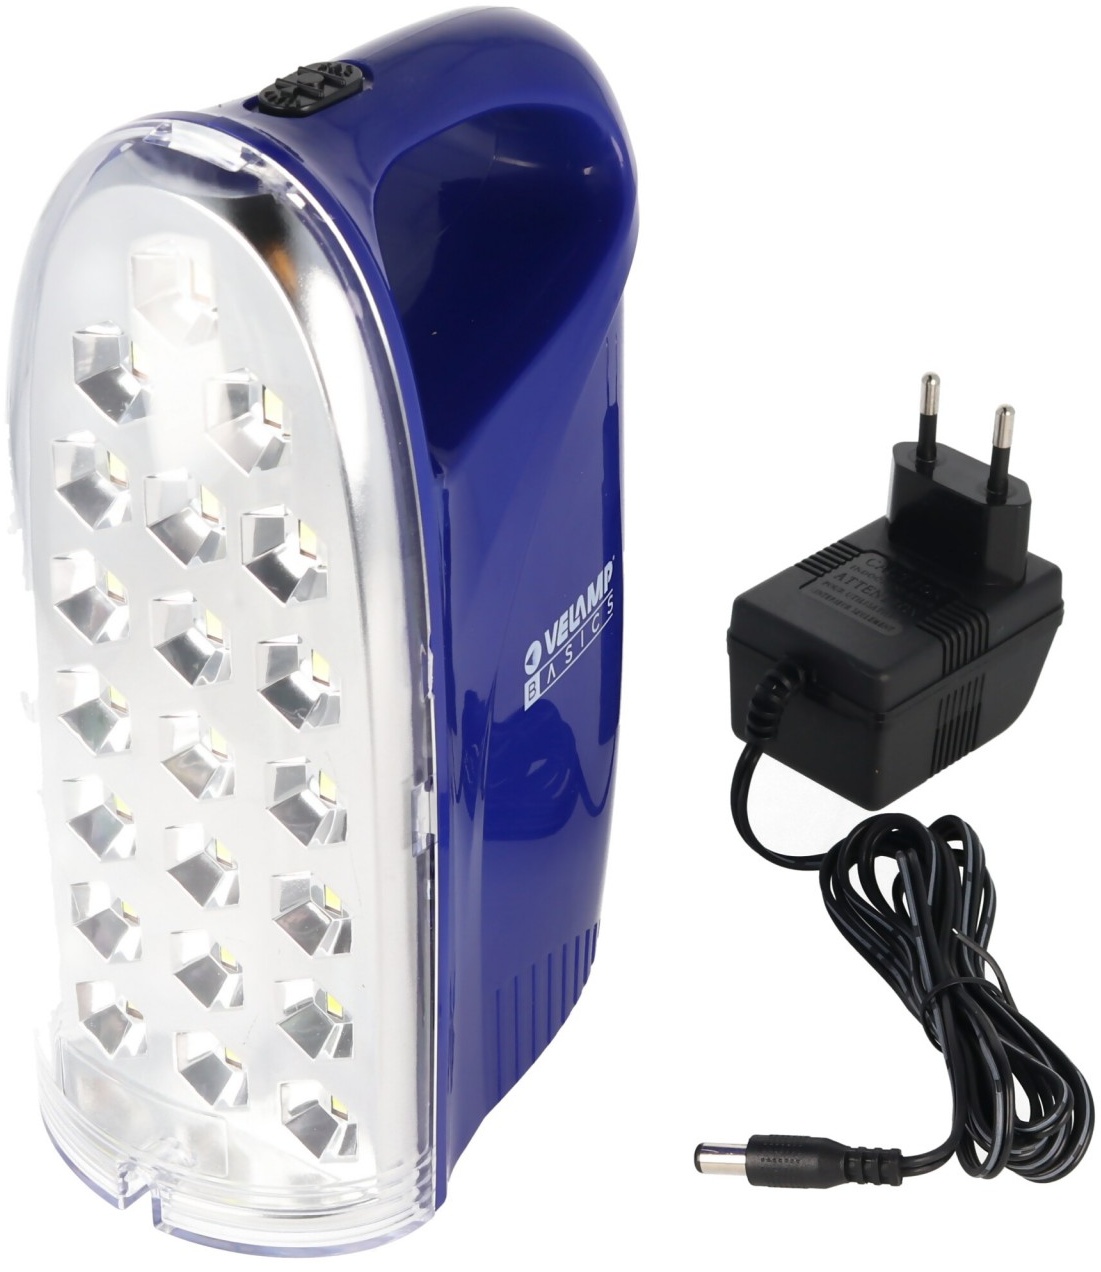 IR312 LED-Lampe Anti Black Out, tragbare wiederaufladbare Notleuchte mit externem Ladegerät, 250 Lumen, mit Stromausfallfunktion